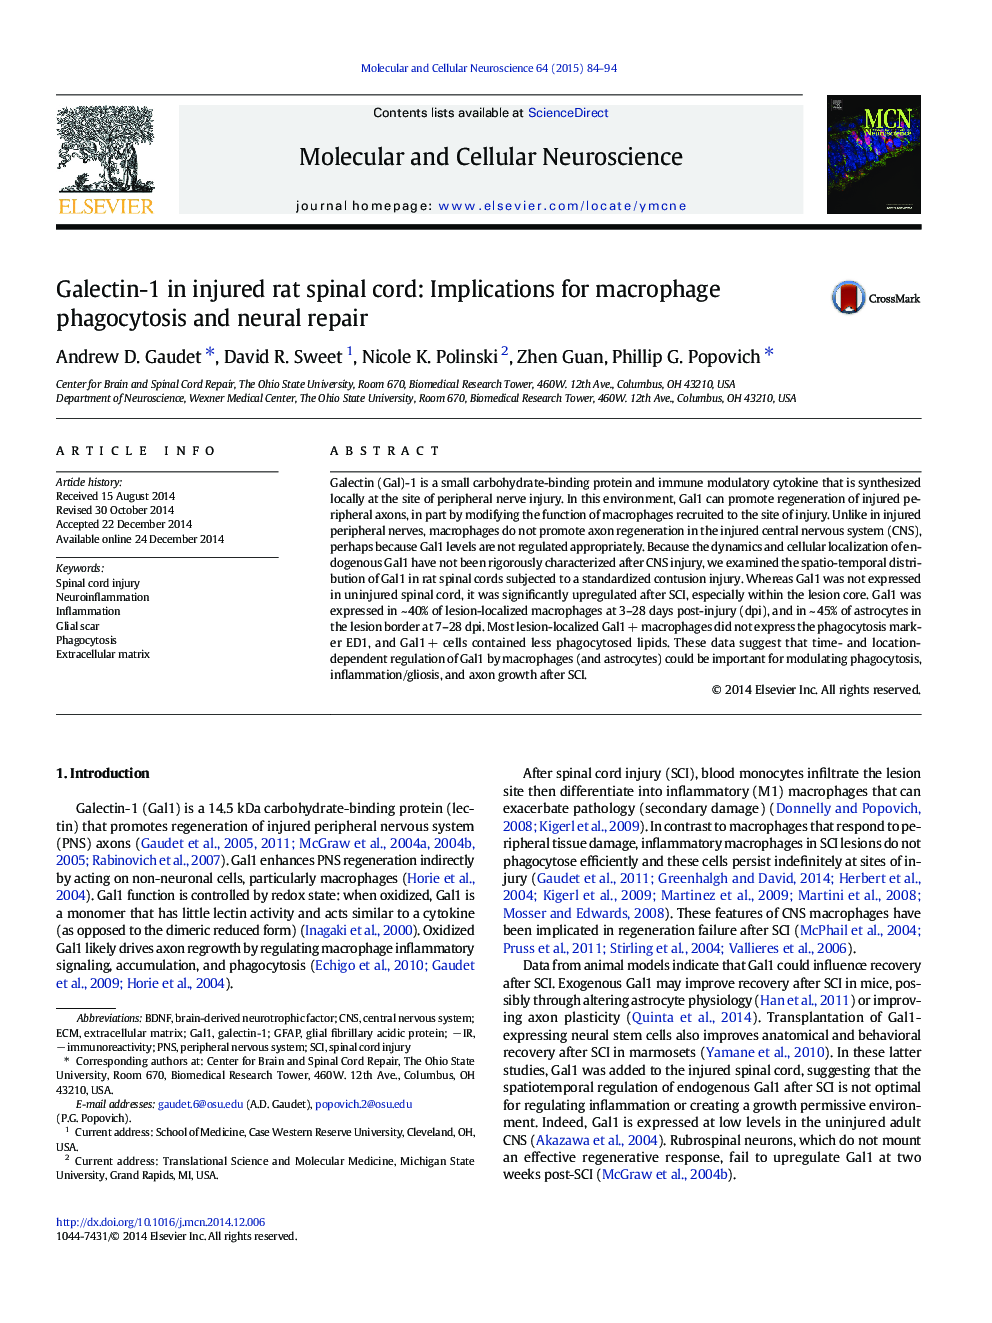 گالکتین-1 در نخاع آسیب دیده: پیامدهای فاگوسیتوز ماکروفاژ و تعمیر عصبی 